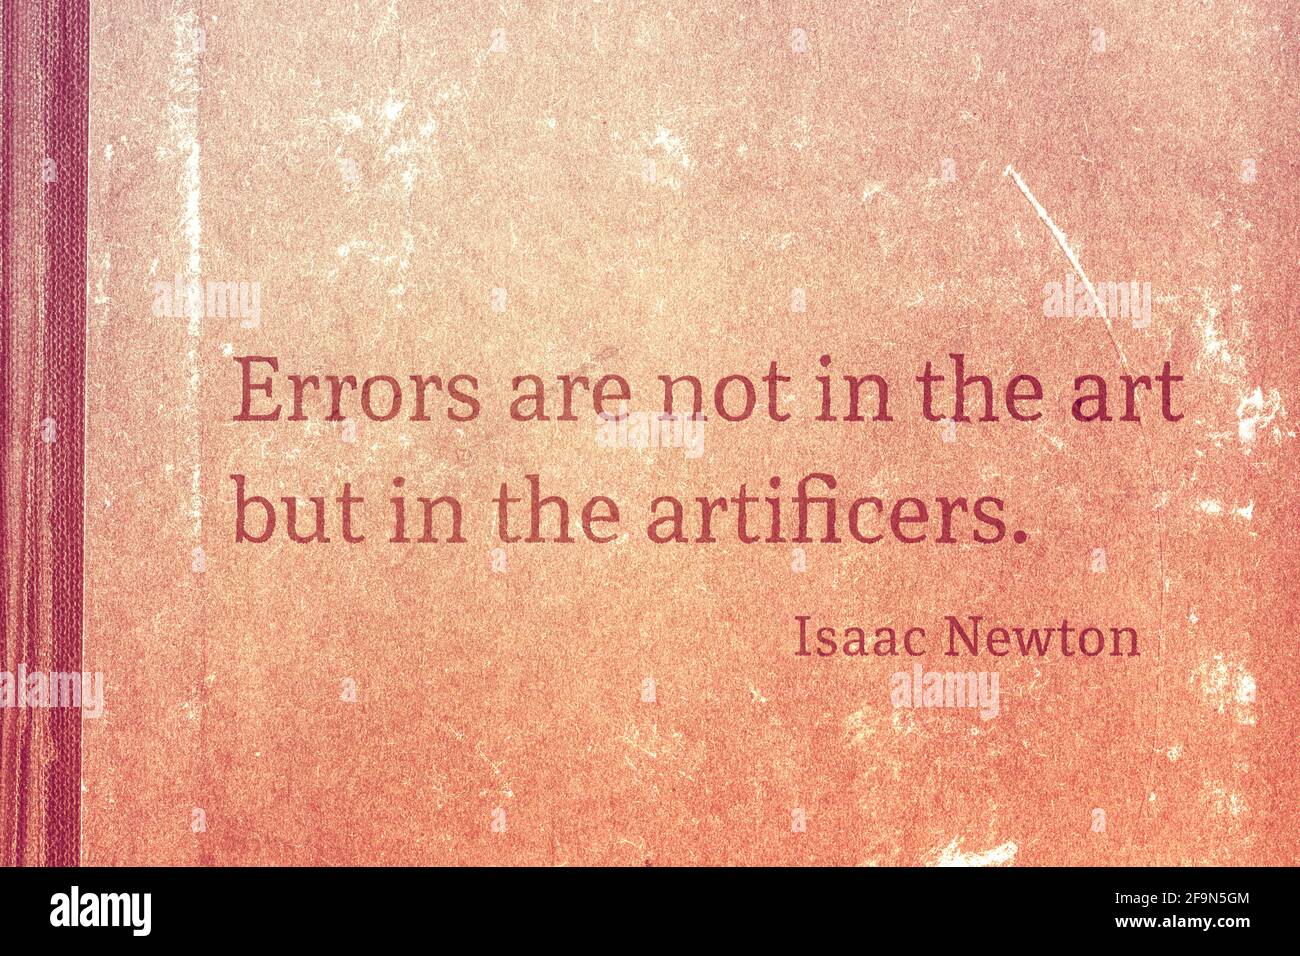 Fehler liegen nicht in der Kunst, sondern in den Künstlern - berühmter englischer Physiker und Mathematiker Sir Isaac Newton Zitat Gedruckt auf Vintage-Karton Stockfoto